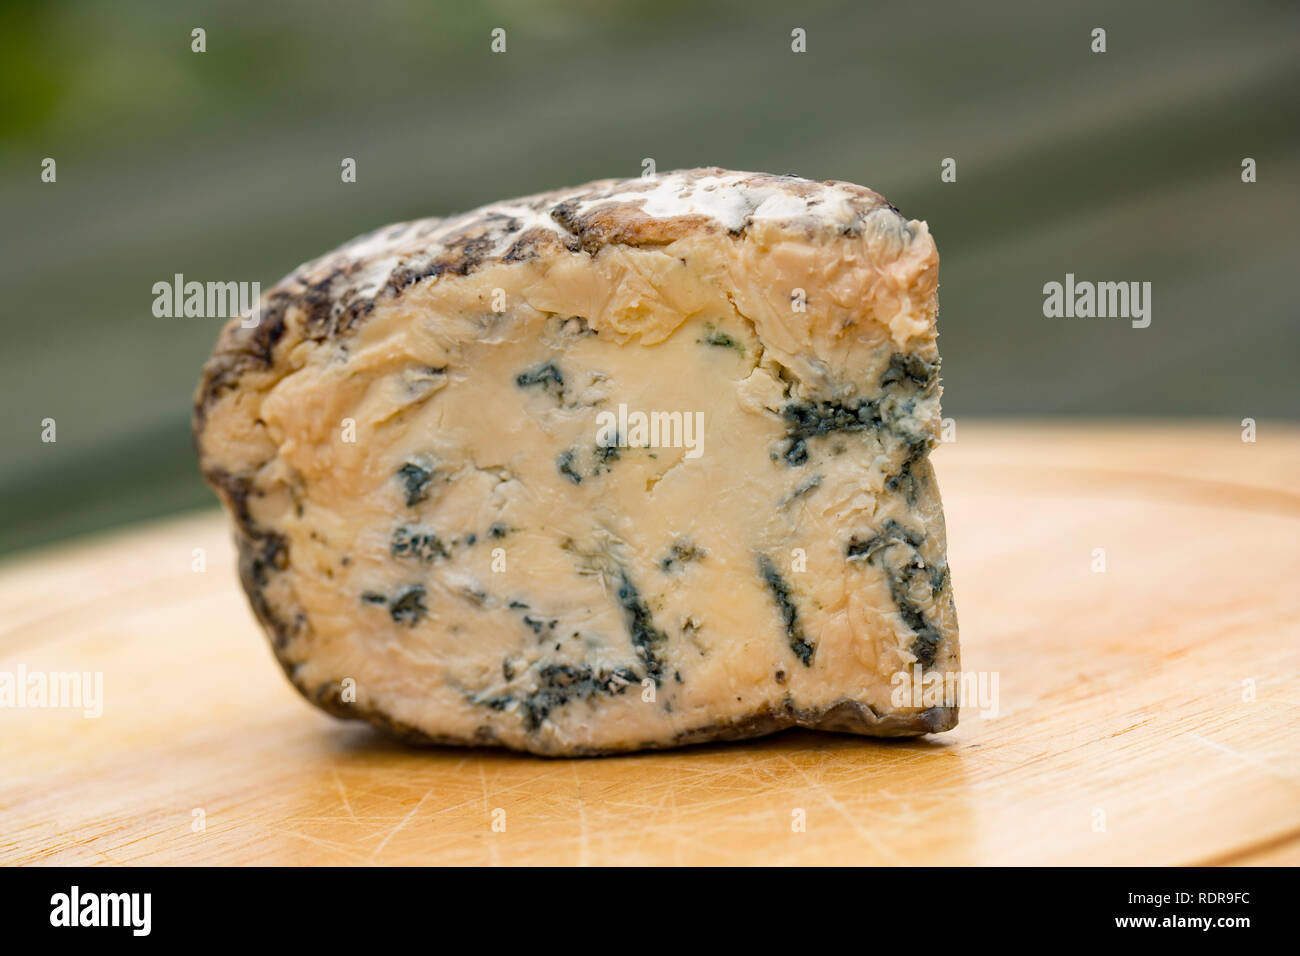 Un cuneo di Burt's formaggio blu realizzato in Cheshire Regno Unito e comprato da un supermercato in Lancashire England Regno Unito GB Foto Stock